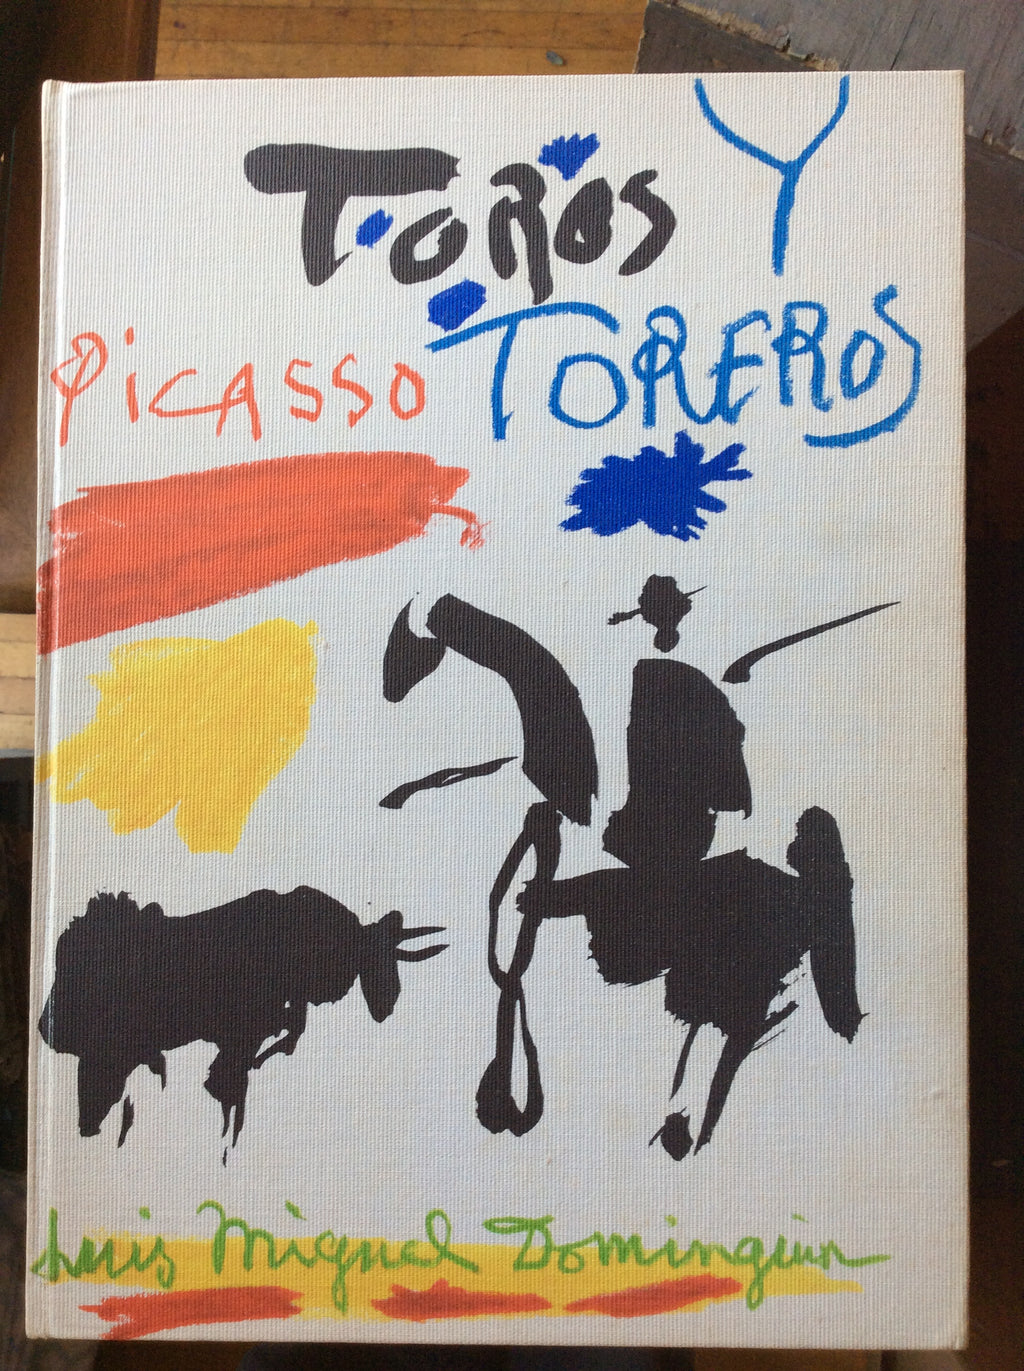 Pablo Picasso: Toros y Toreros Luis Miguel Dominguin and George Boudaille Published by Aux Editions Cercle D'Art, Paris, 1961